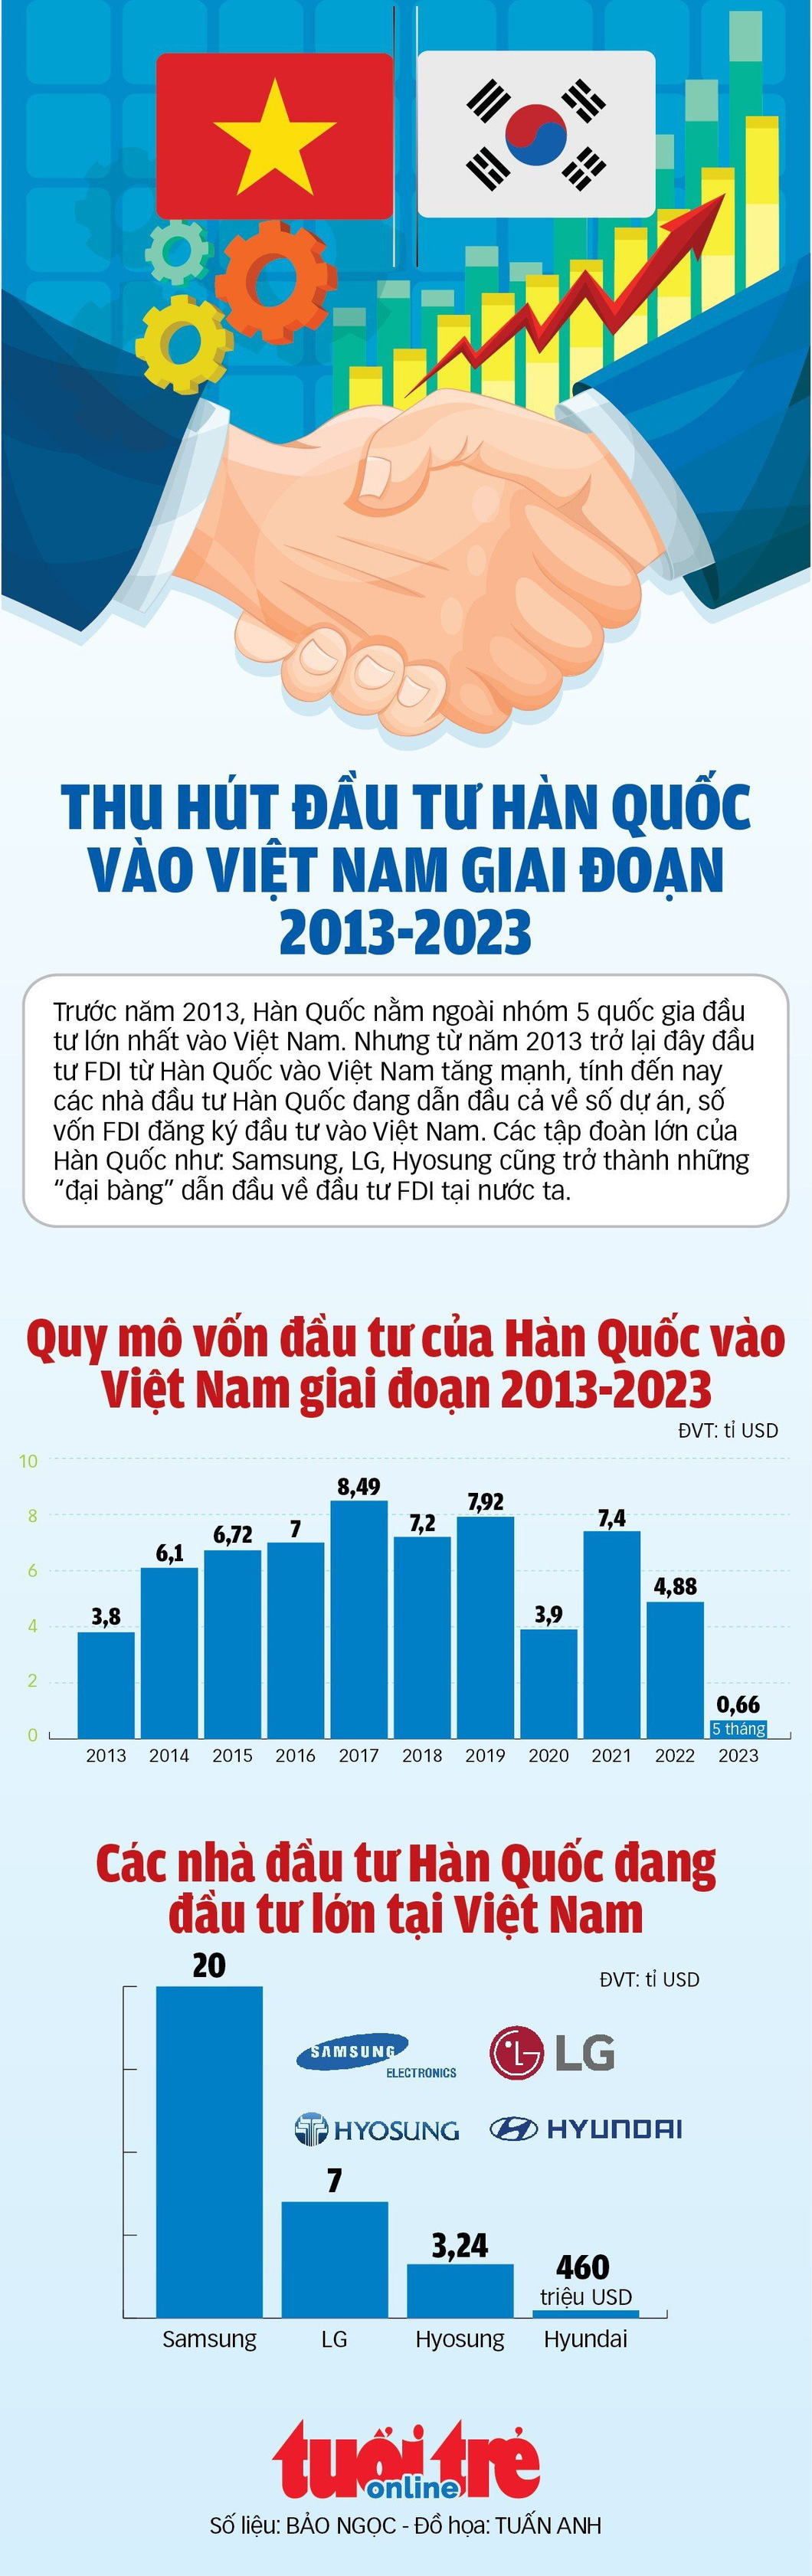 Hàn Quốc dẫn đầu vốn FDI vào Việt Nam, tập đoàn nào đóng góp nhiều nhất? - Ảnh 1.